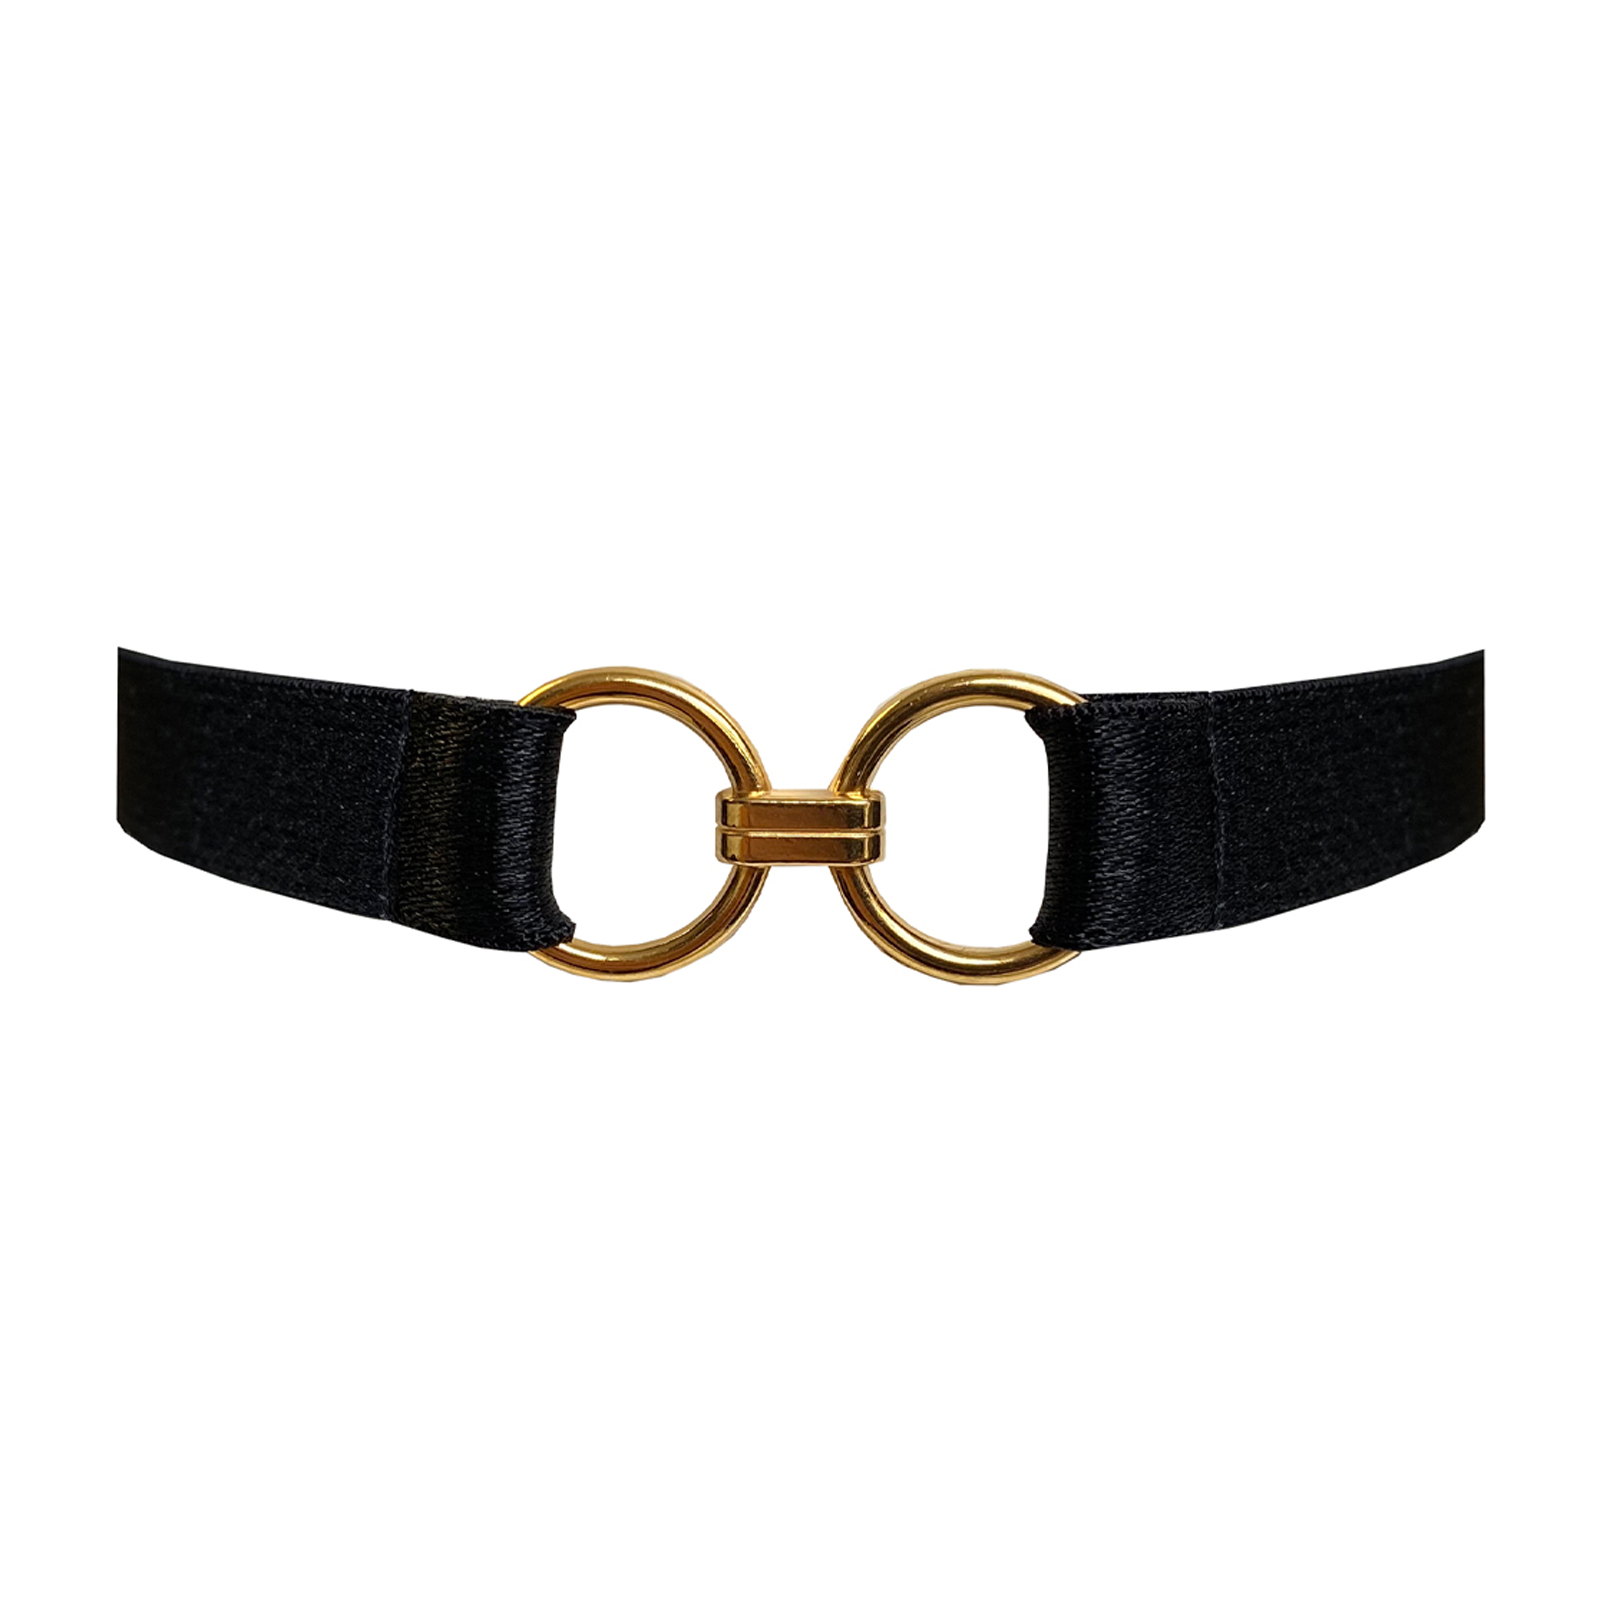 Kleio strap collar by Bordelle